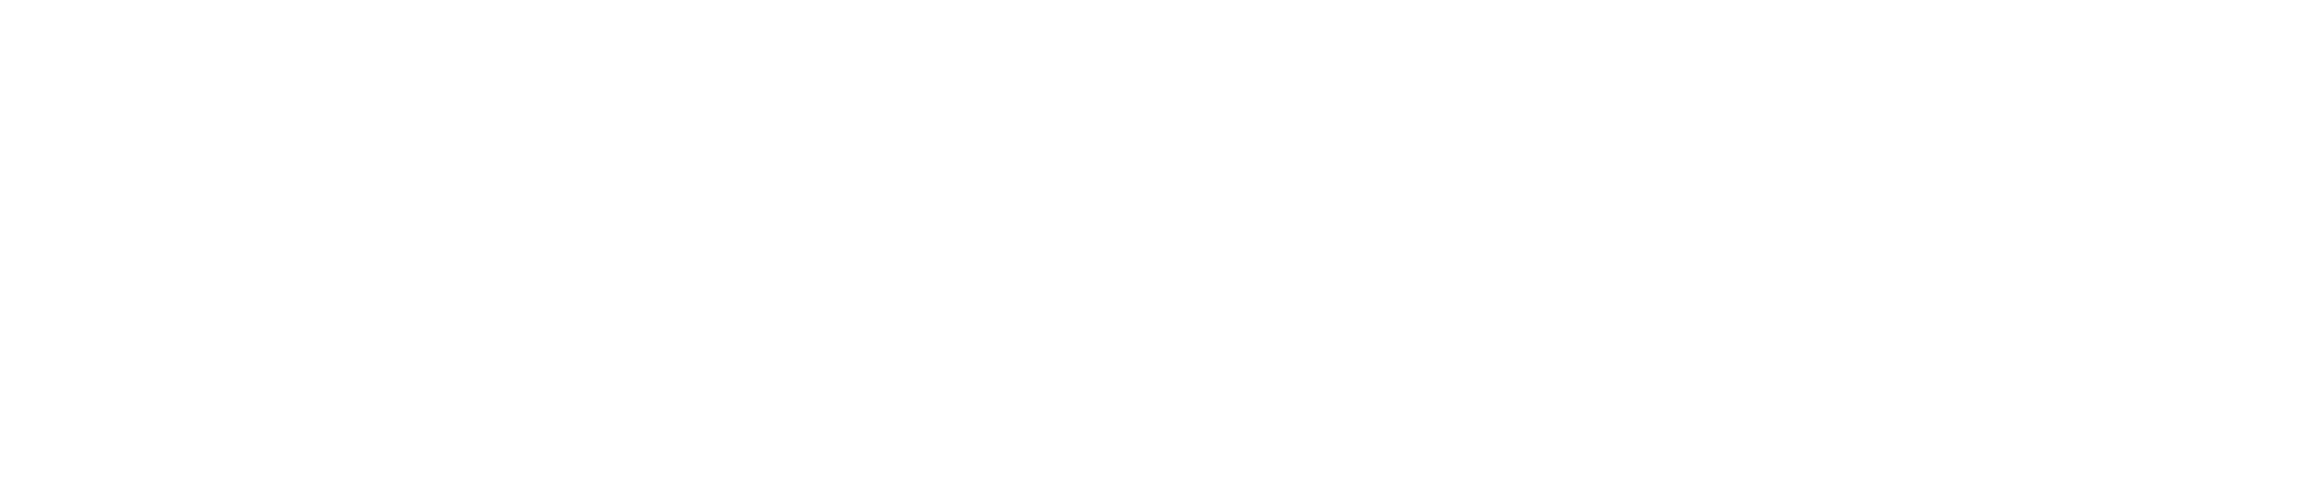 Bracketology Logo White